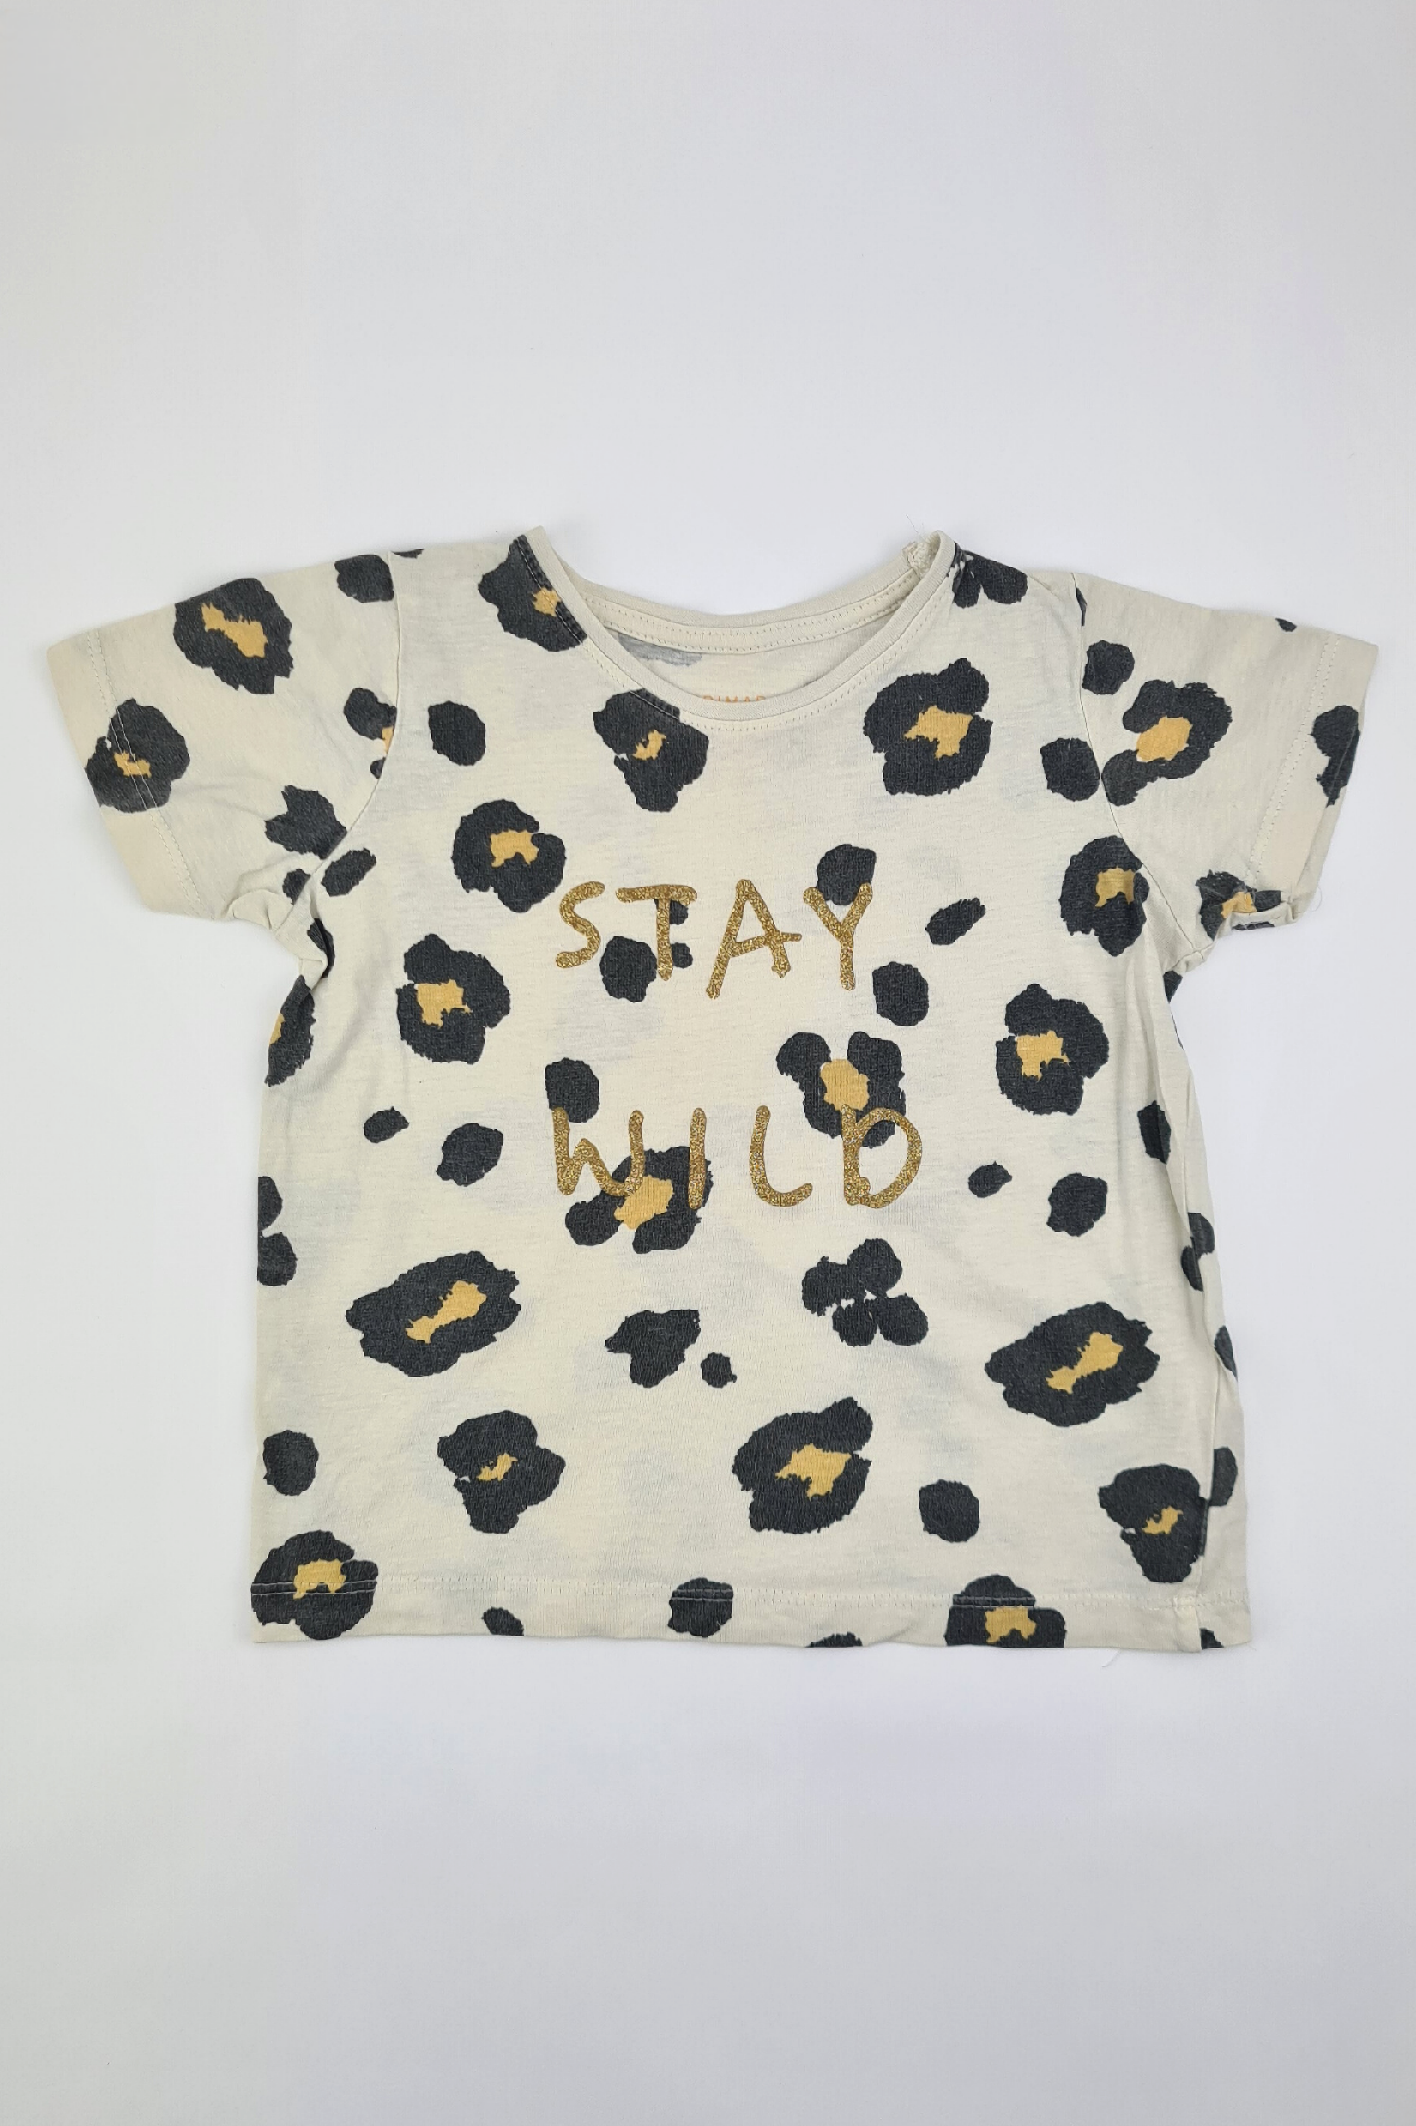 3-4y - Leopard Print 'STAY WILD' T-shirt (Primark)